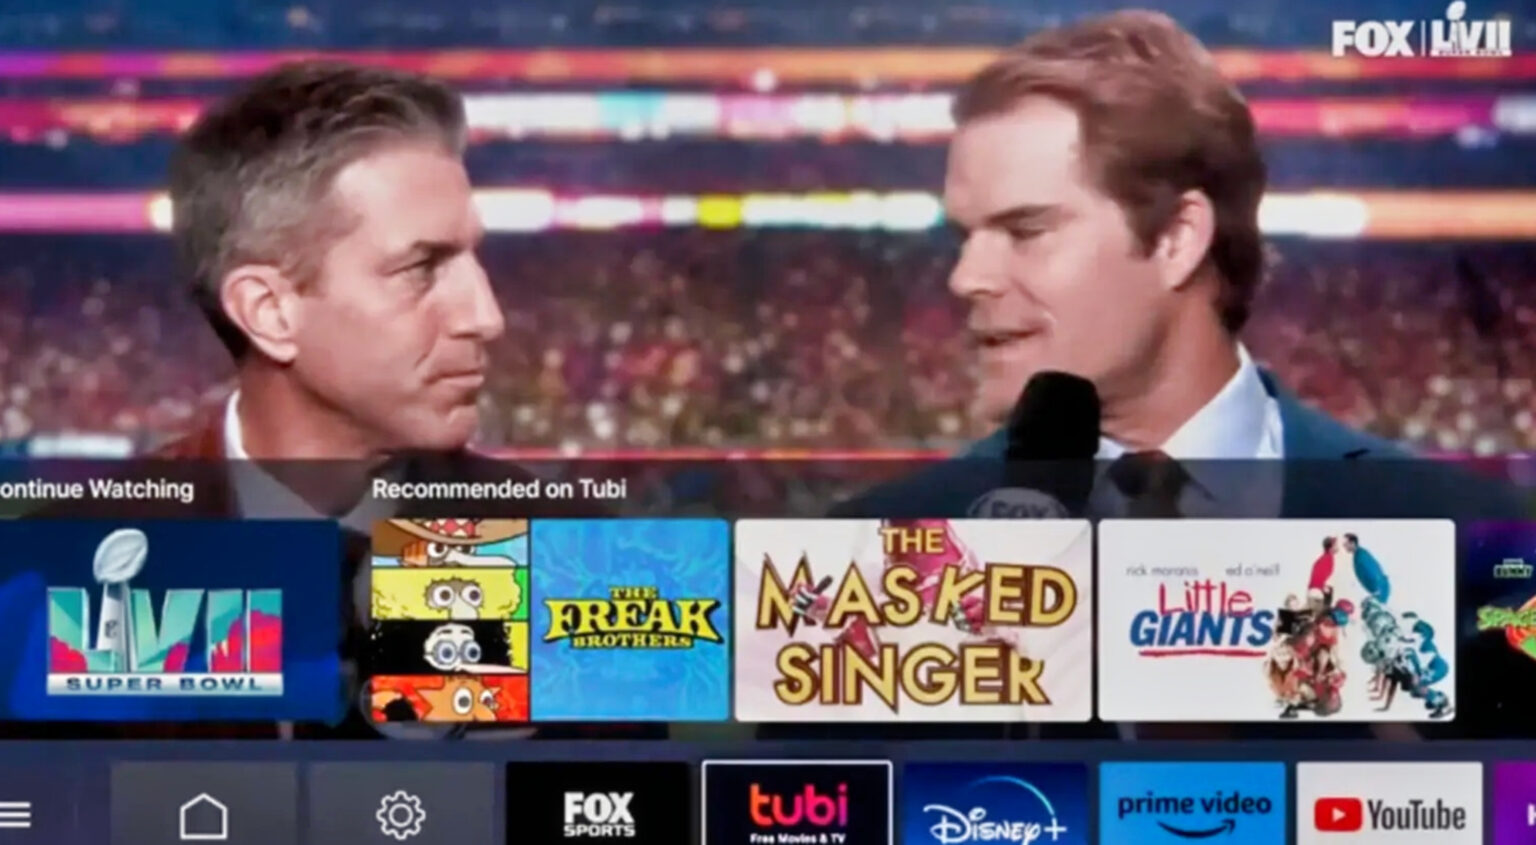 Tubi Commercial Pranked Fans During Super Bowl (VIDEO)